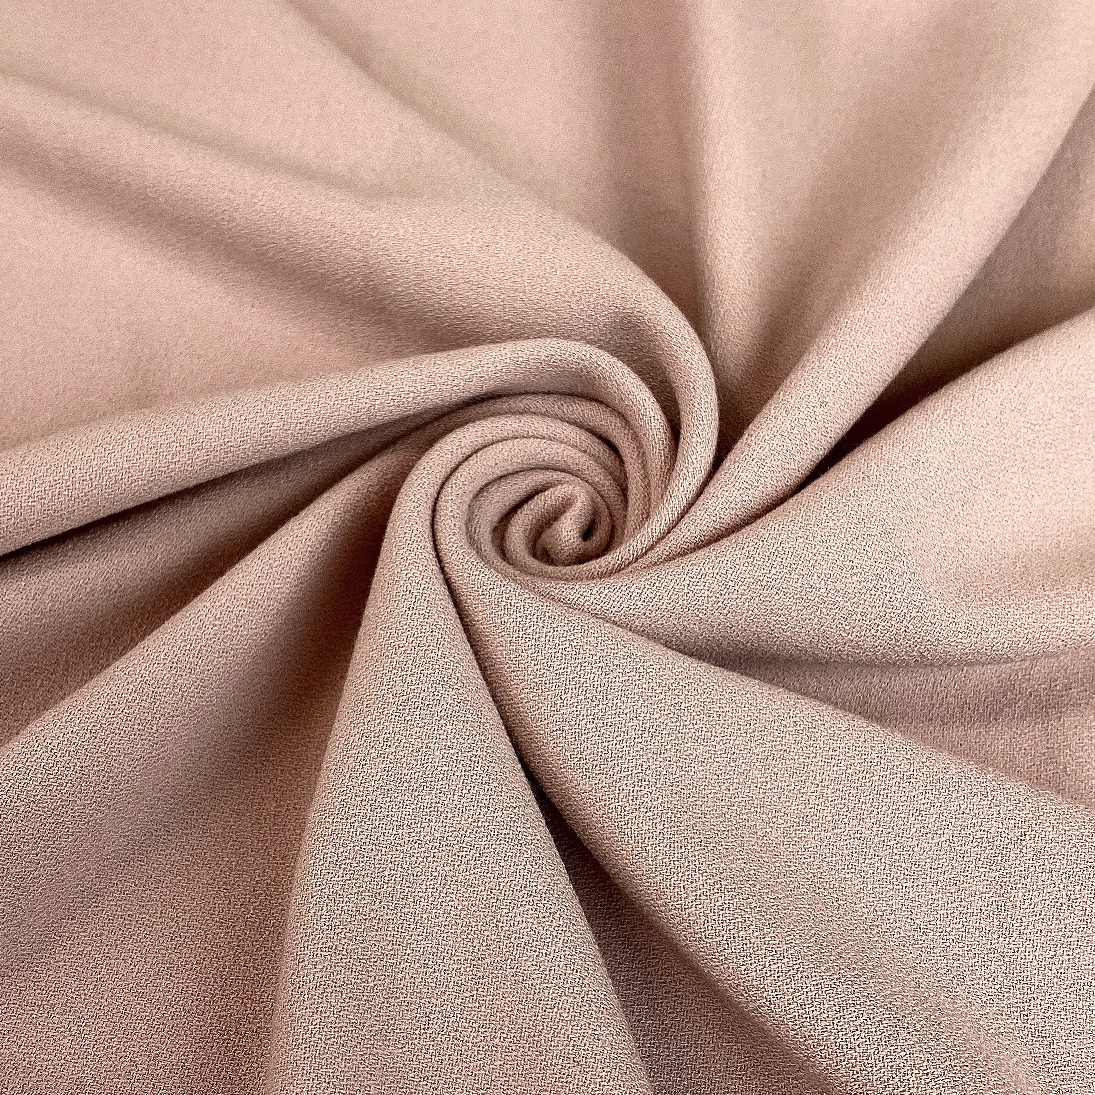 Stretch Crepe-crepe Fabric-medium Crepe-bridal Fabric-apparel